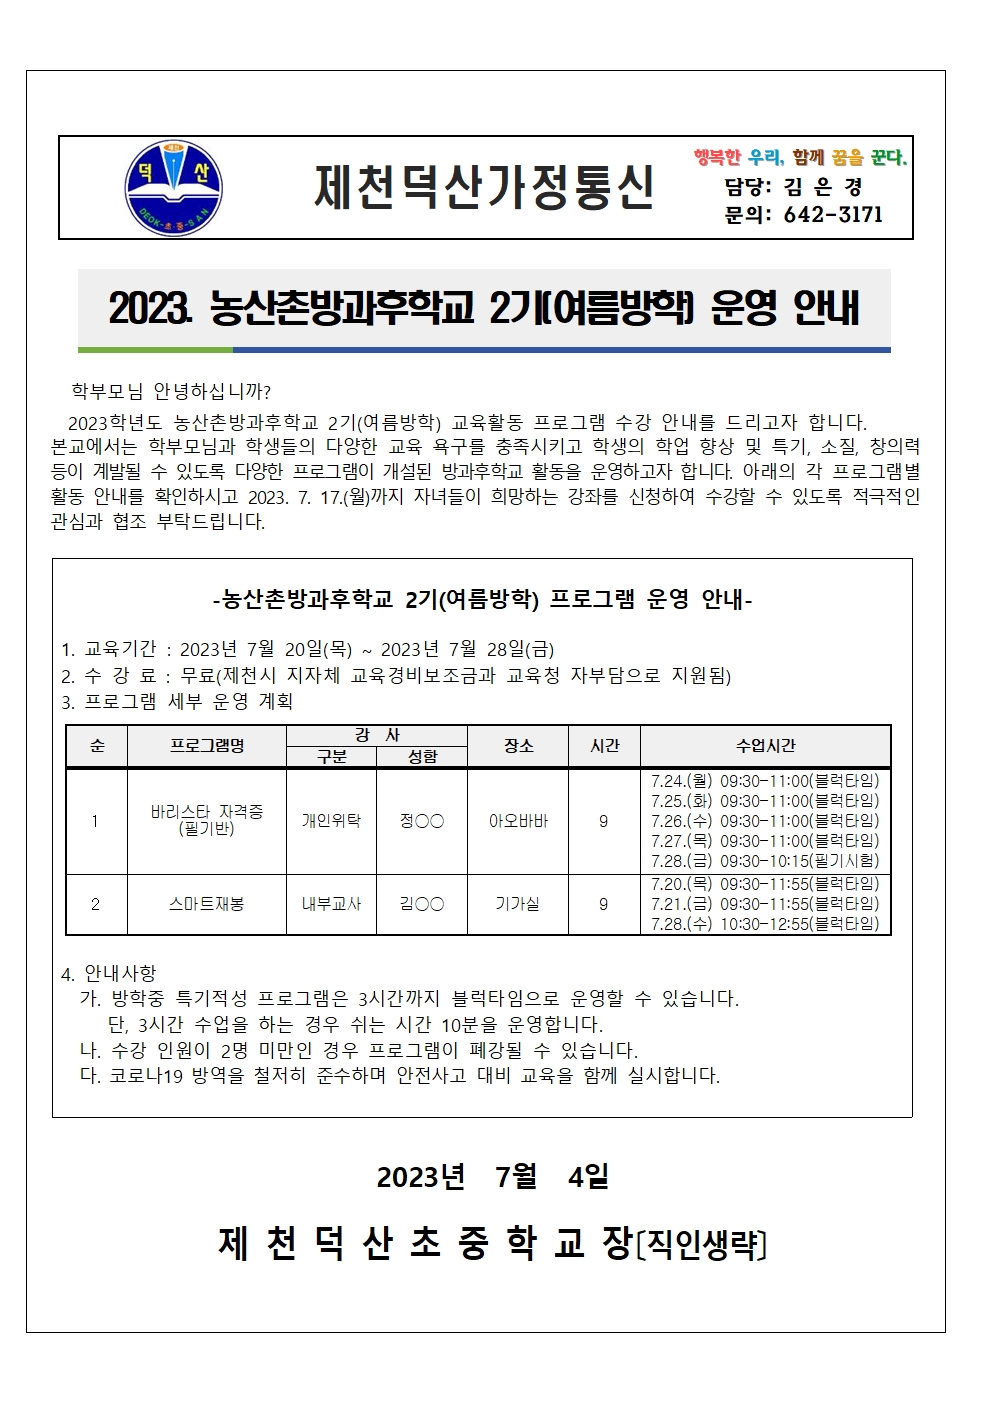 2023. 농산촌방과후학교 2기(여름방학) 프로그램 가정통신문001